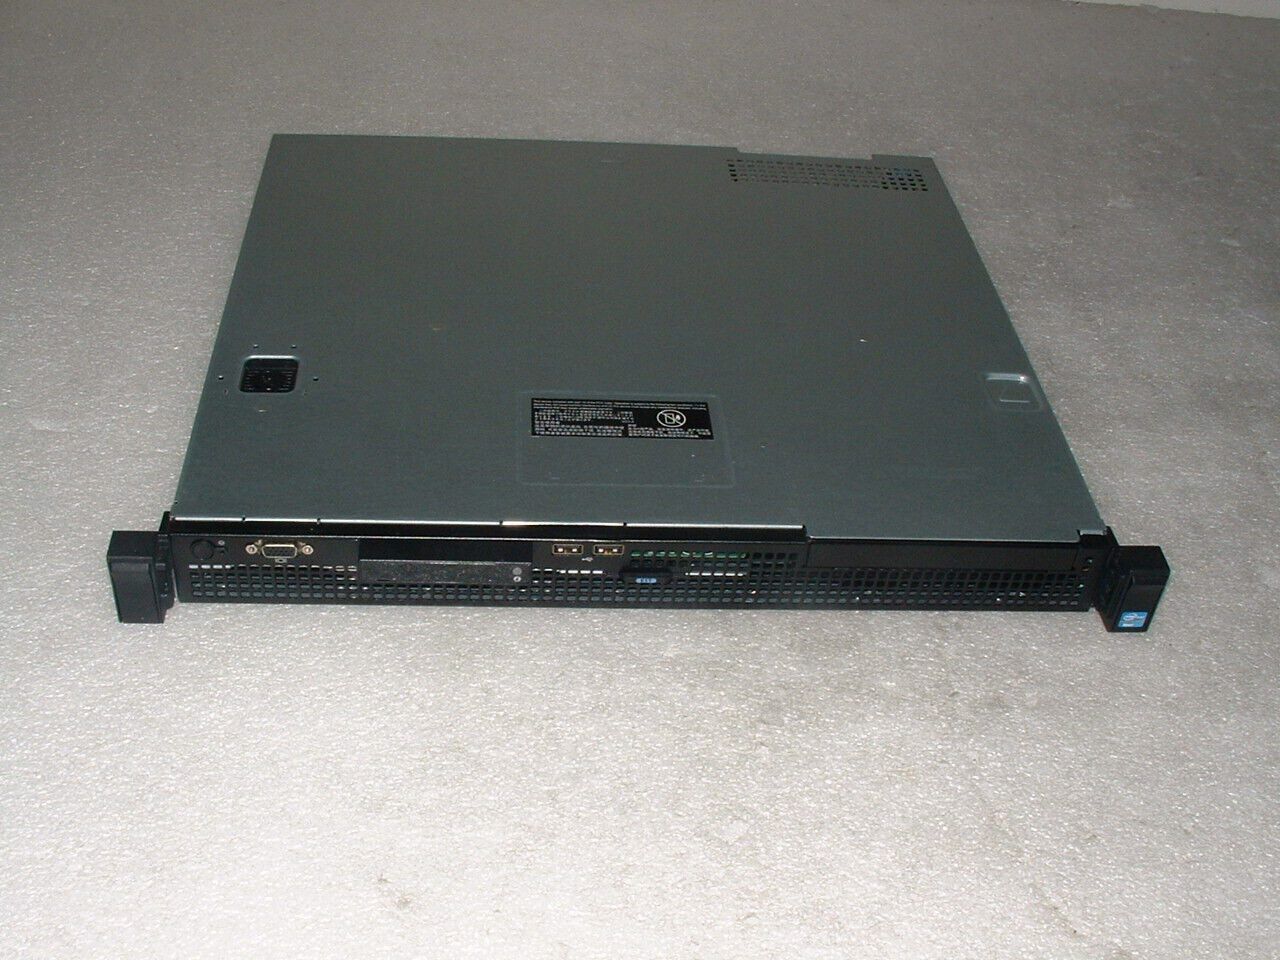 Dell Poweredge R210 II Server Xeon E3-1220 v2 3.1ghz Quad Core / 8gb / 1x Tray